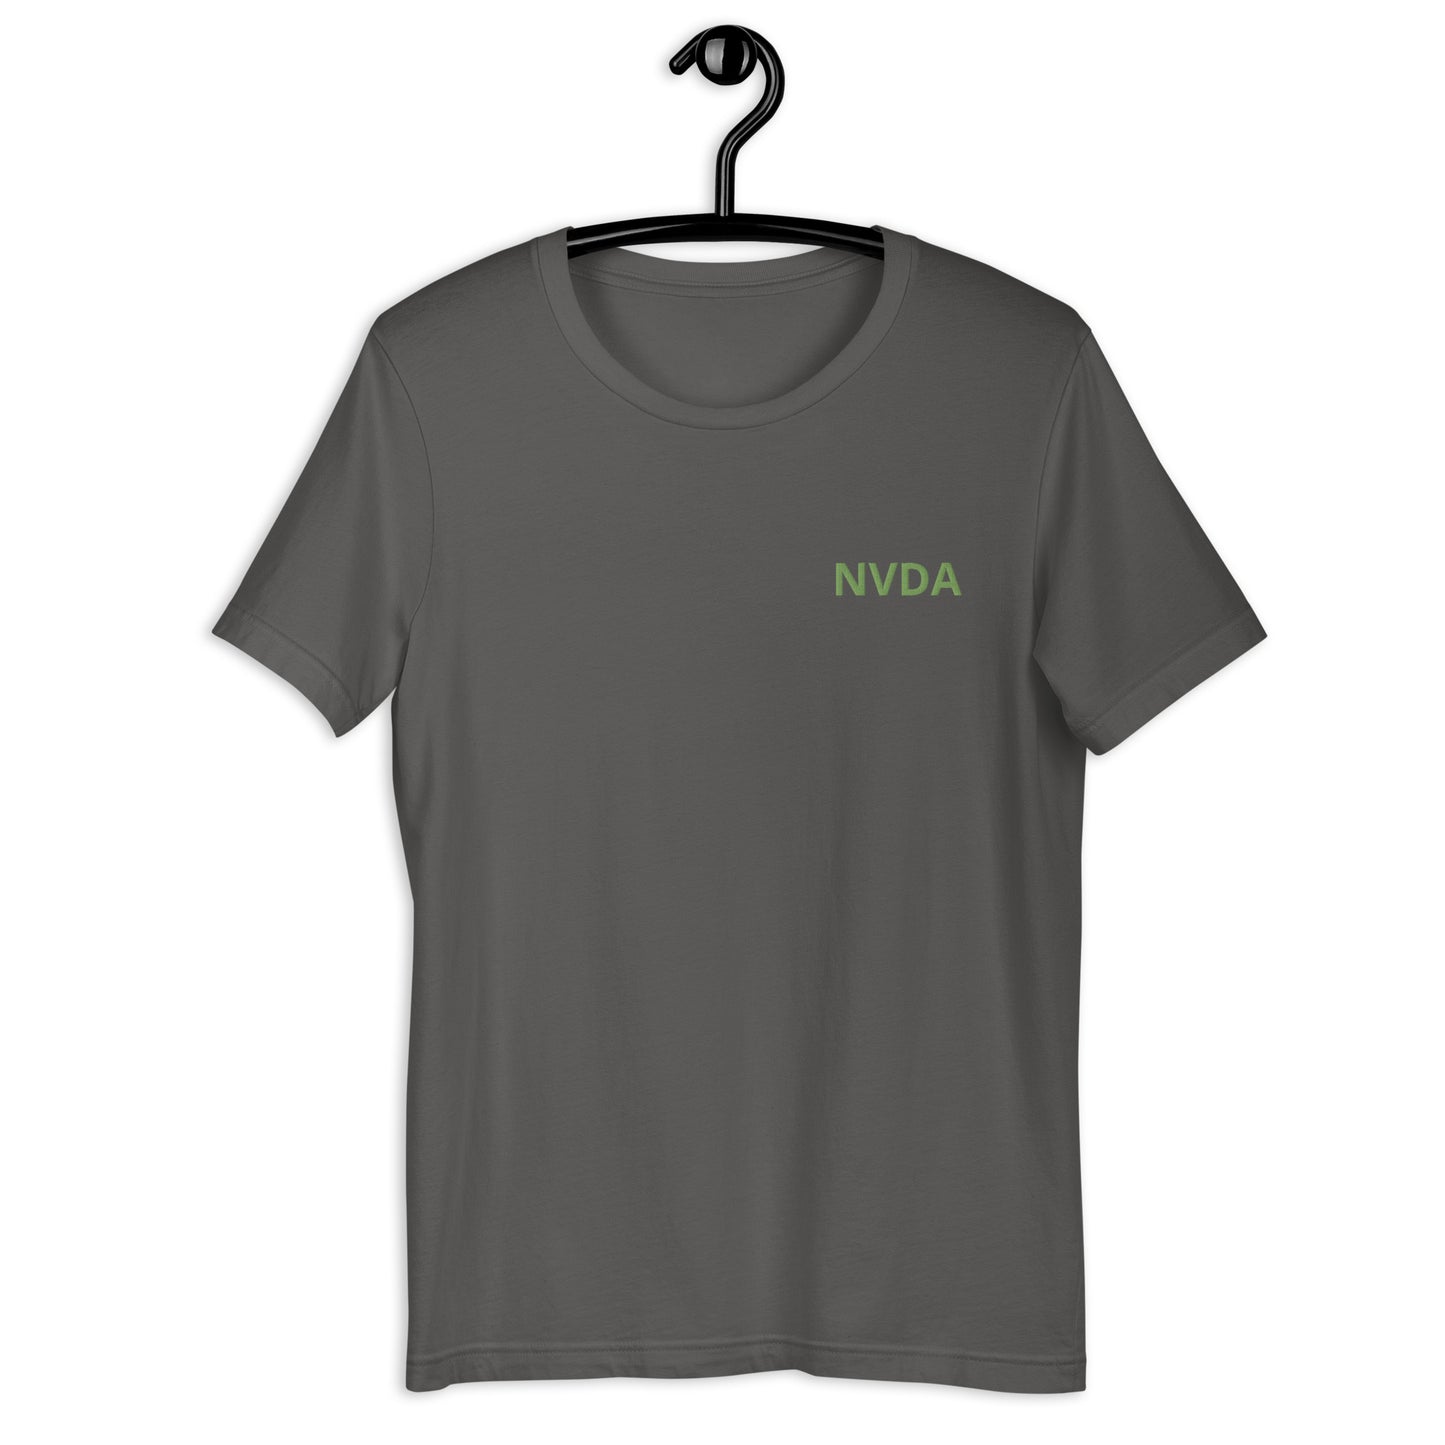 Unisex NVDA t-shirt